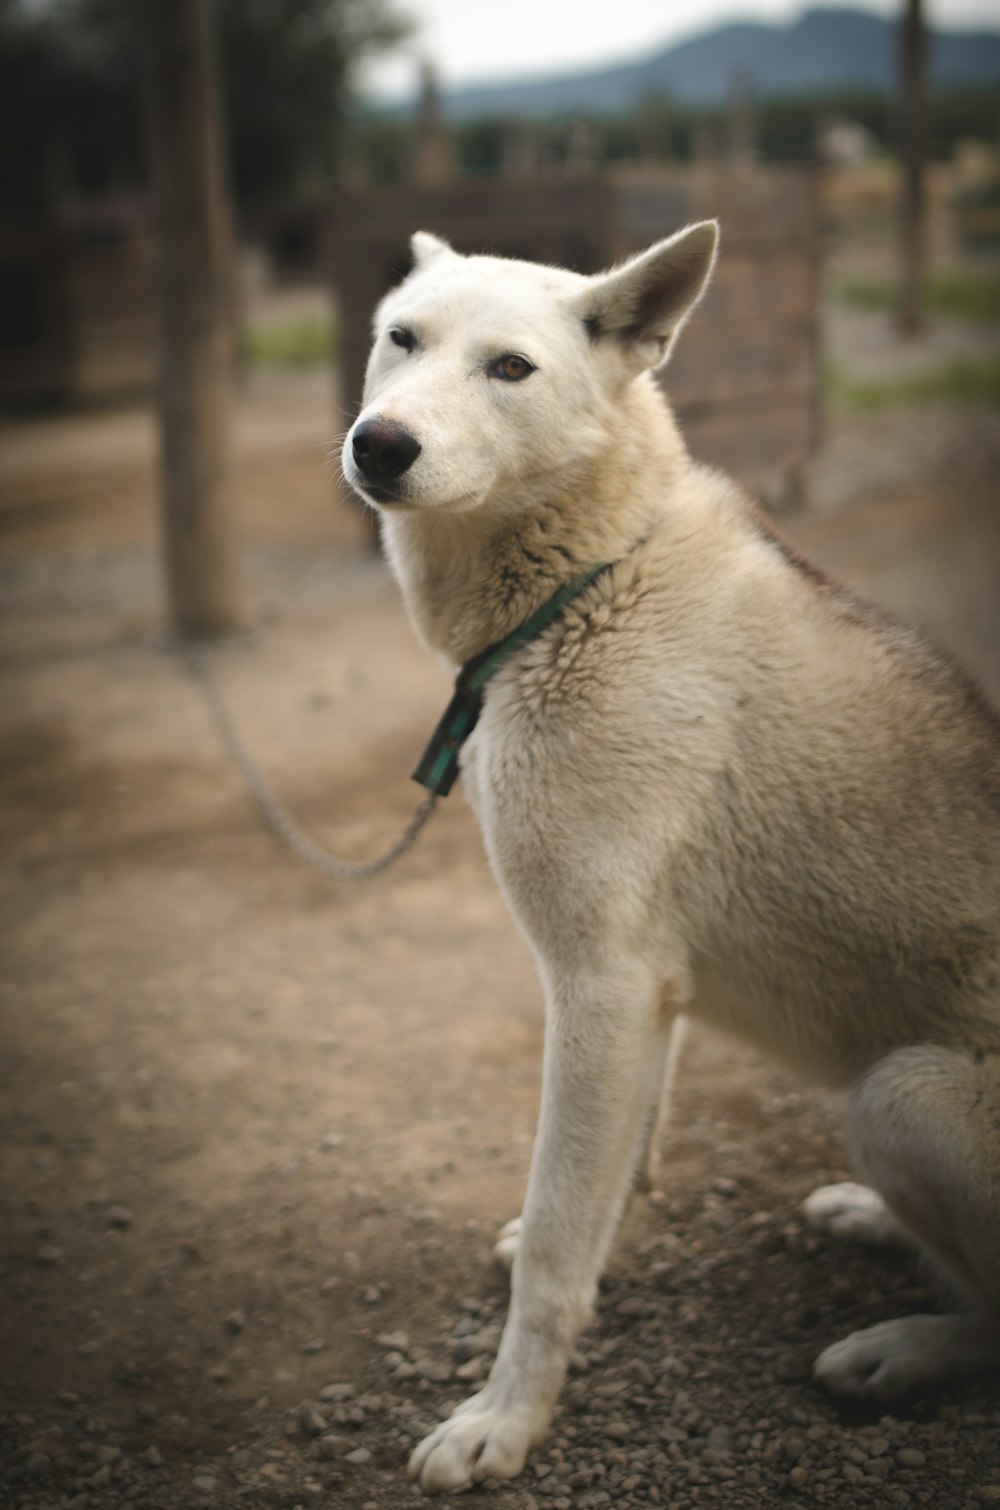 white short coated dog with blue leash